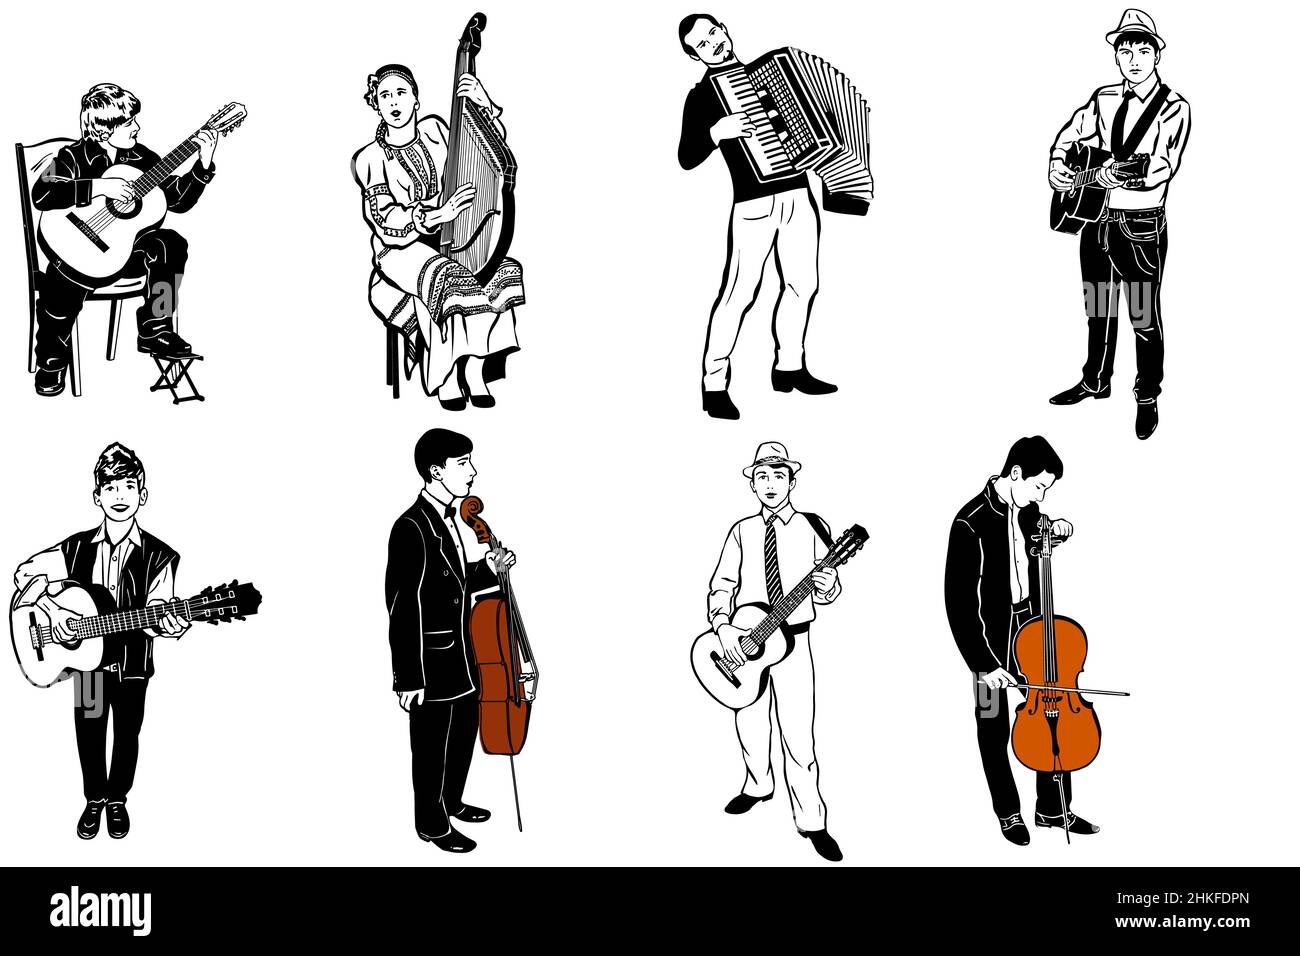 un croquis vectoriel de musiciens jouant divers instruments de musique Banque D'Images